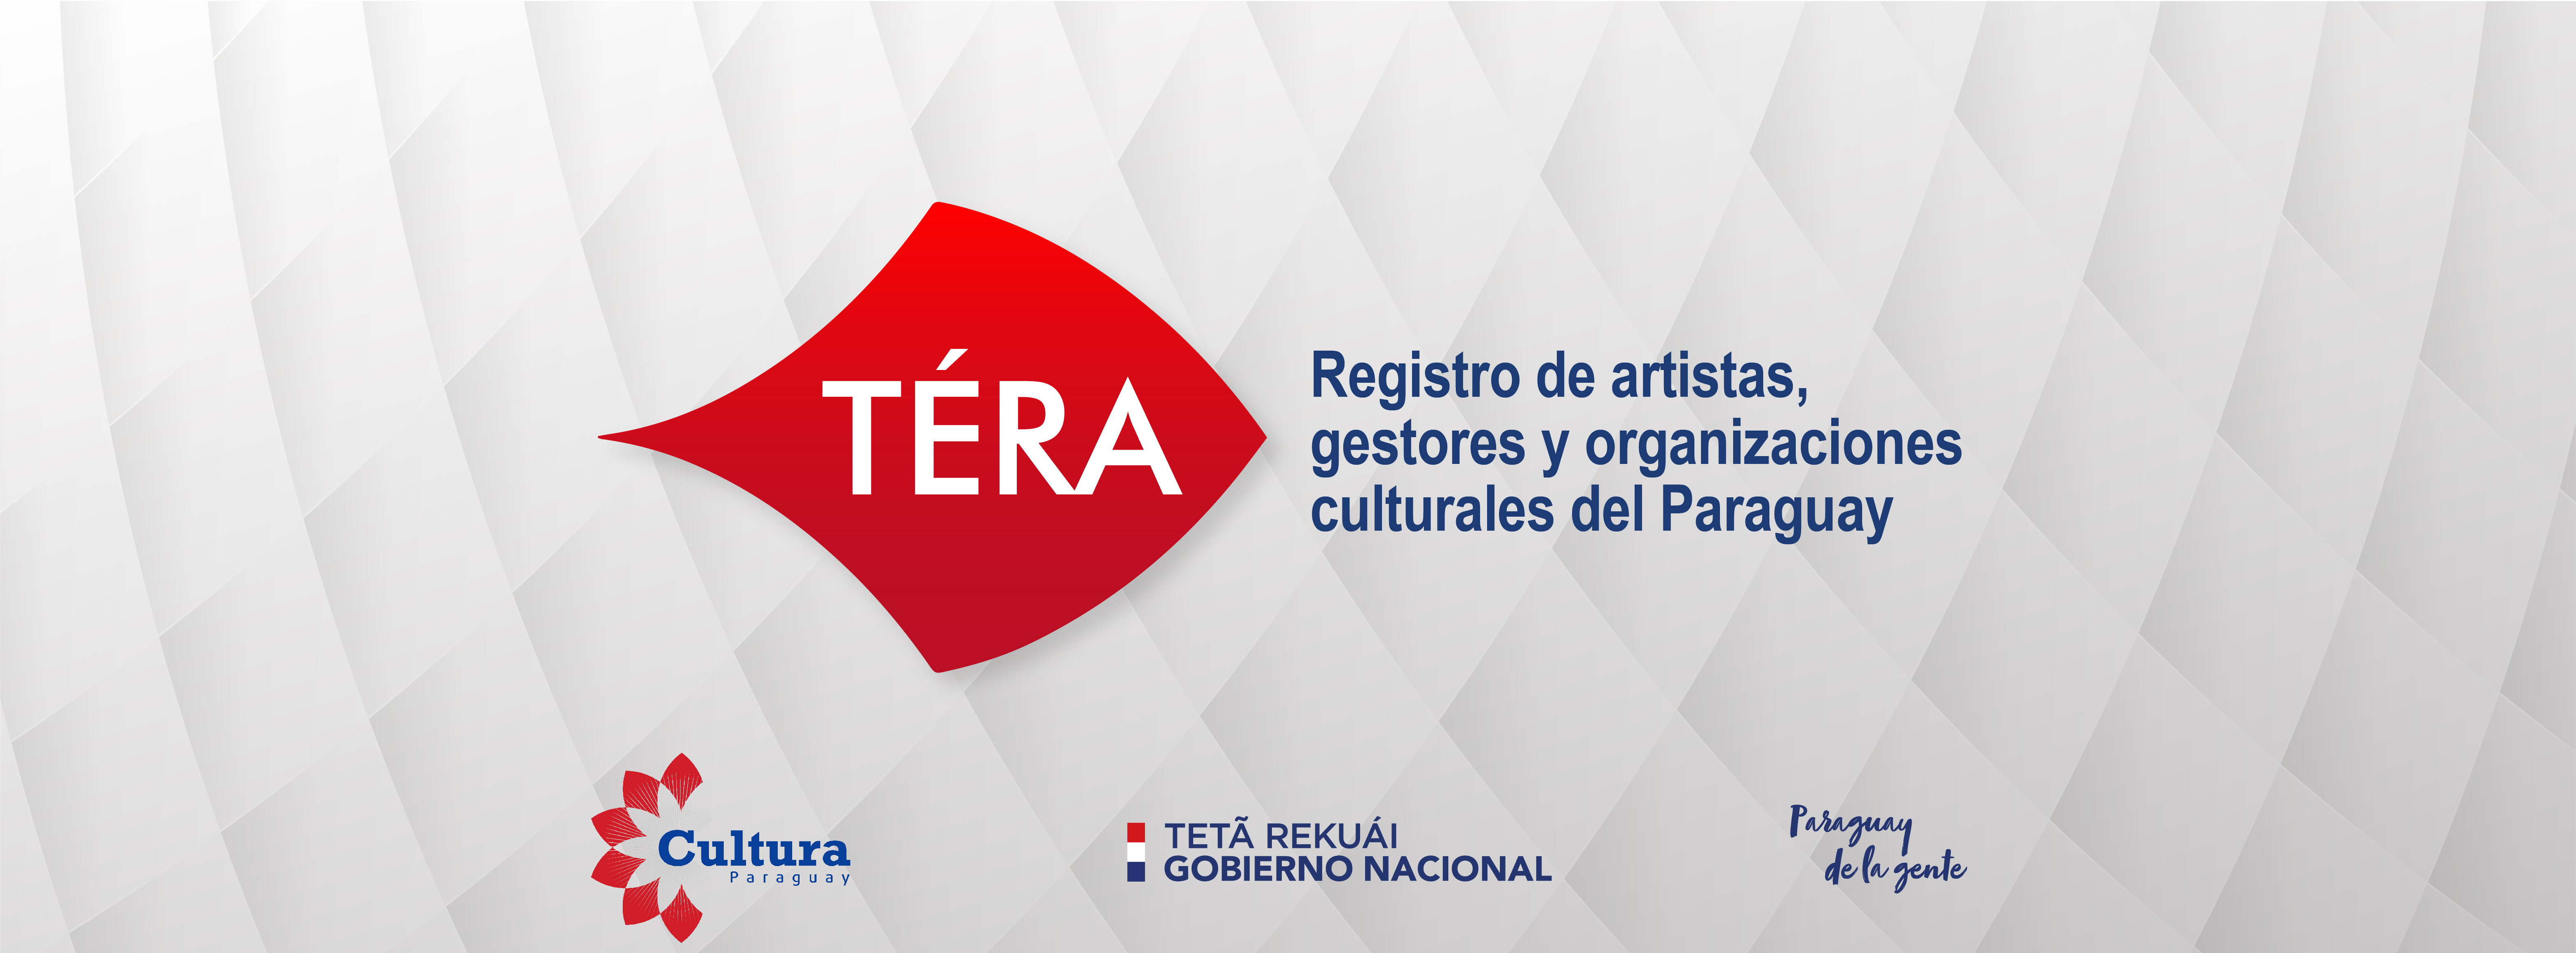 La SNC habilita nuevamente TÉRA, el registro de artistas, gestores y organizaciones culturales del Paraguay imagen